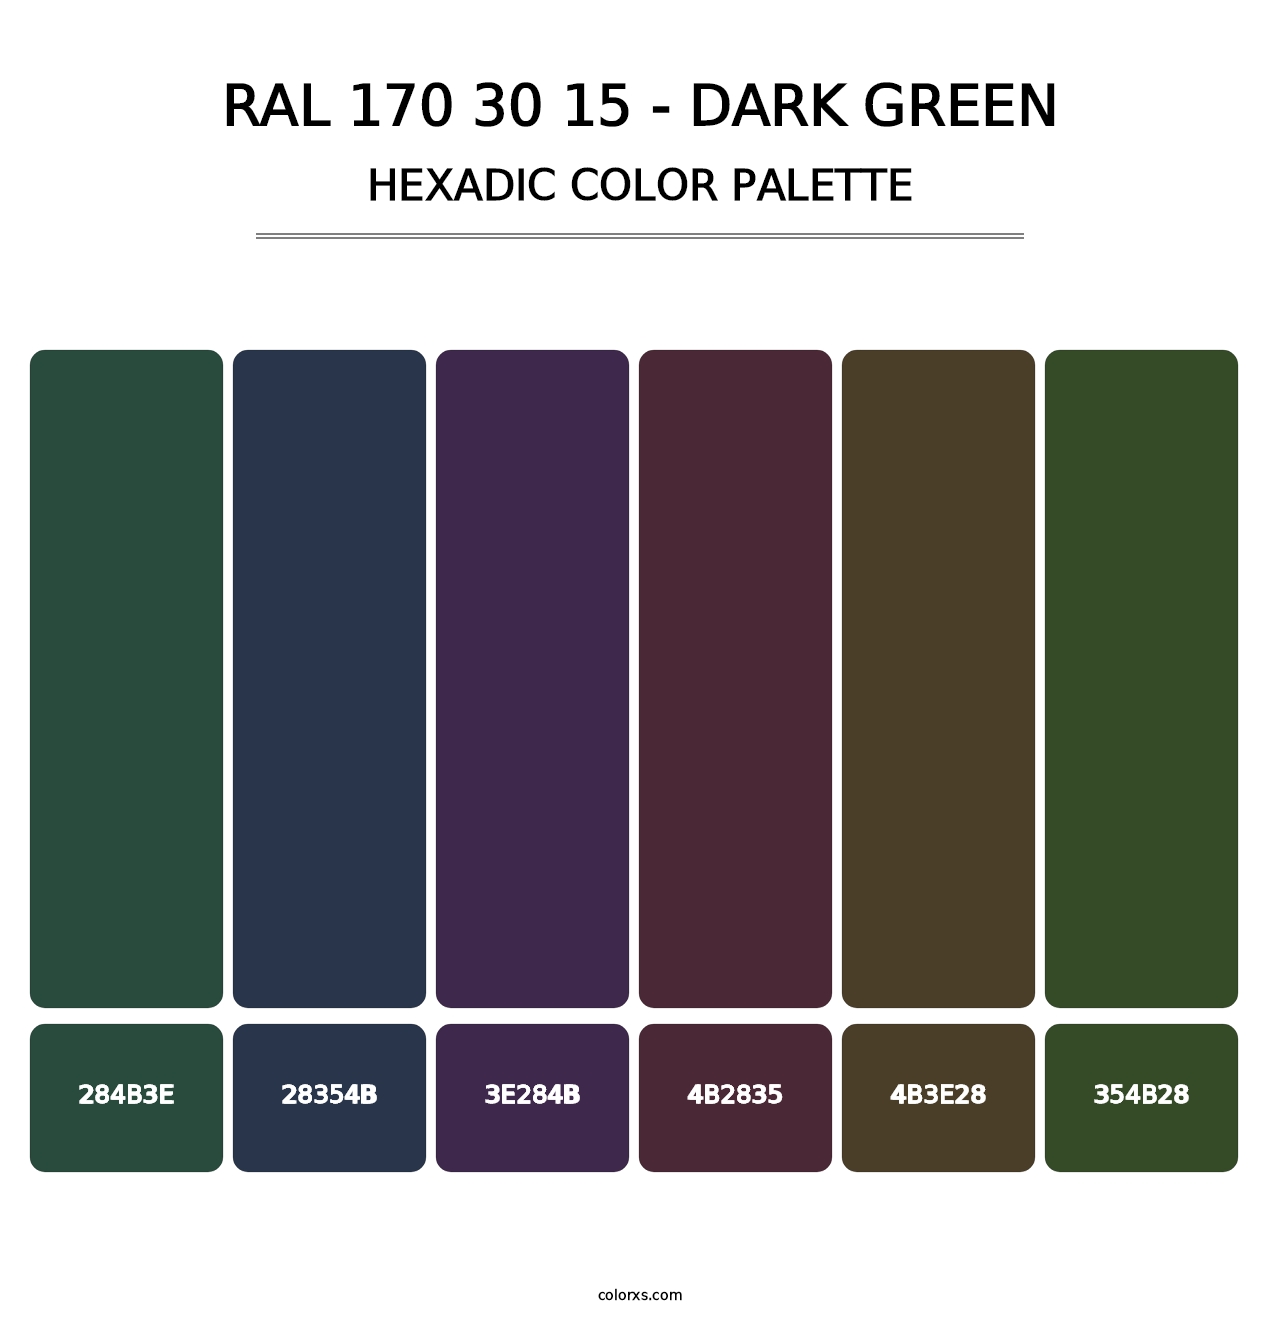 RAL 170 30 15 - Dark Green - Hexadic Color Palette